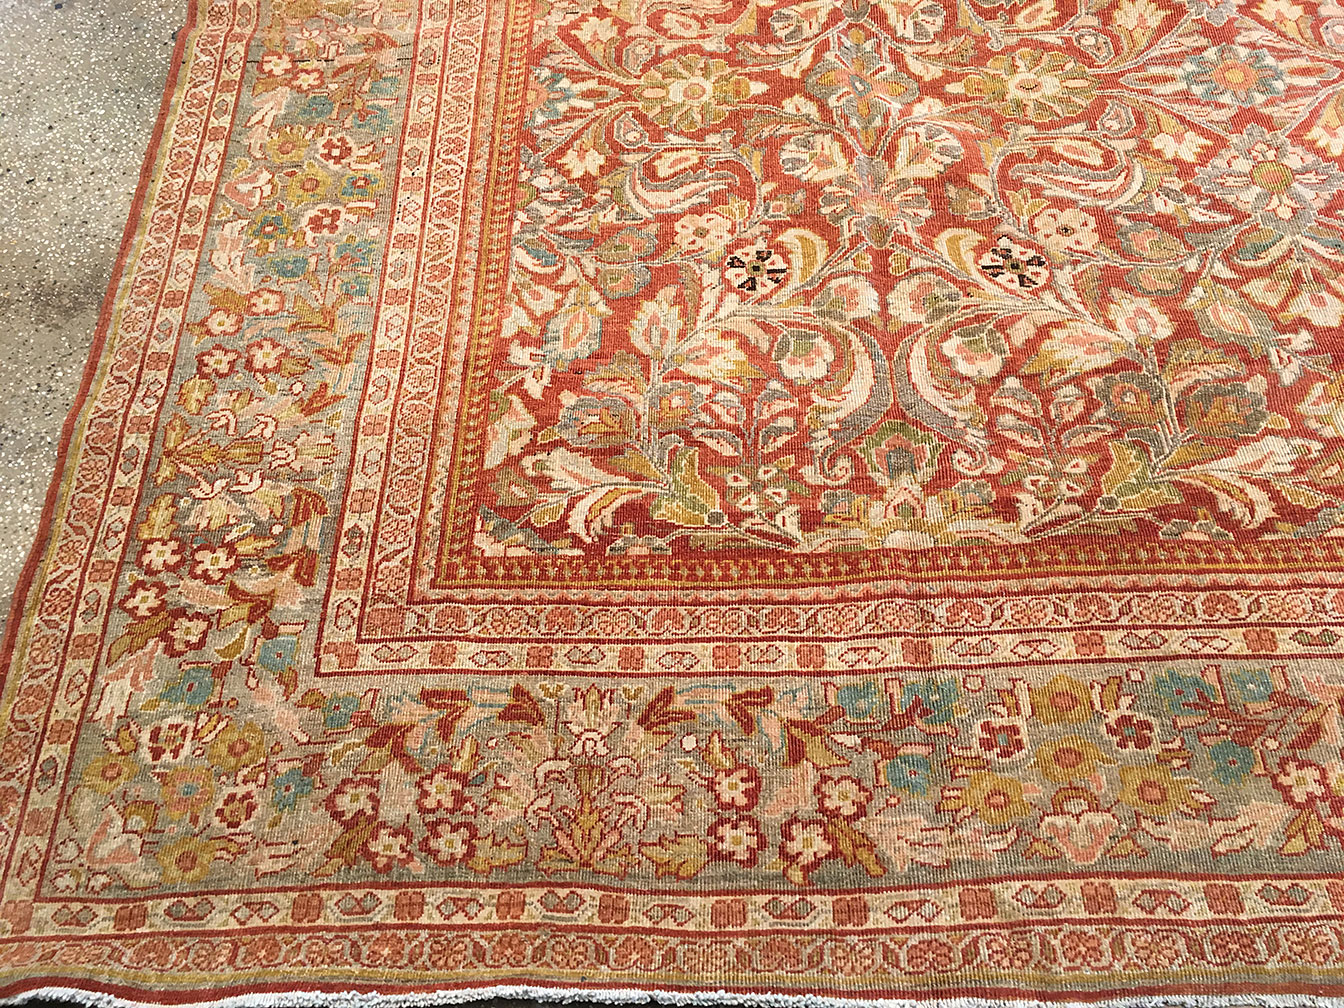 Antique sultan abad Carpet - # 52148